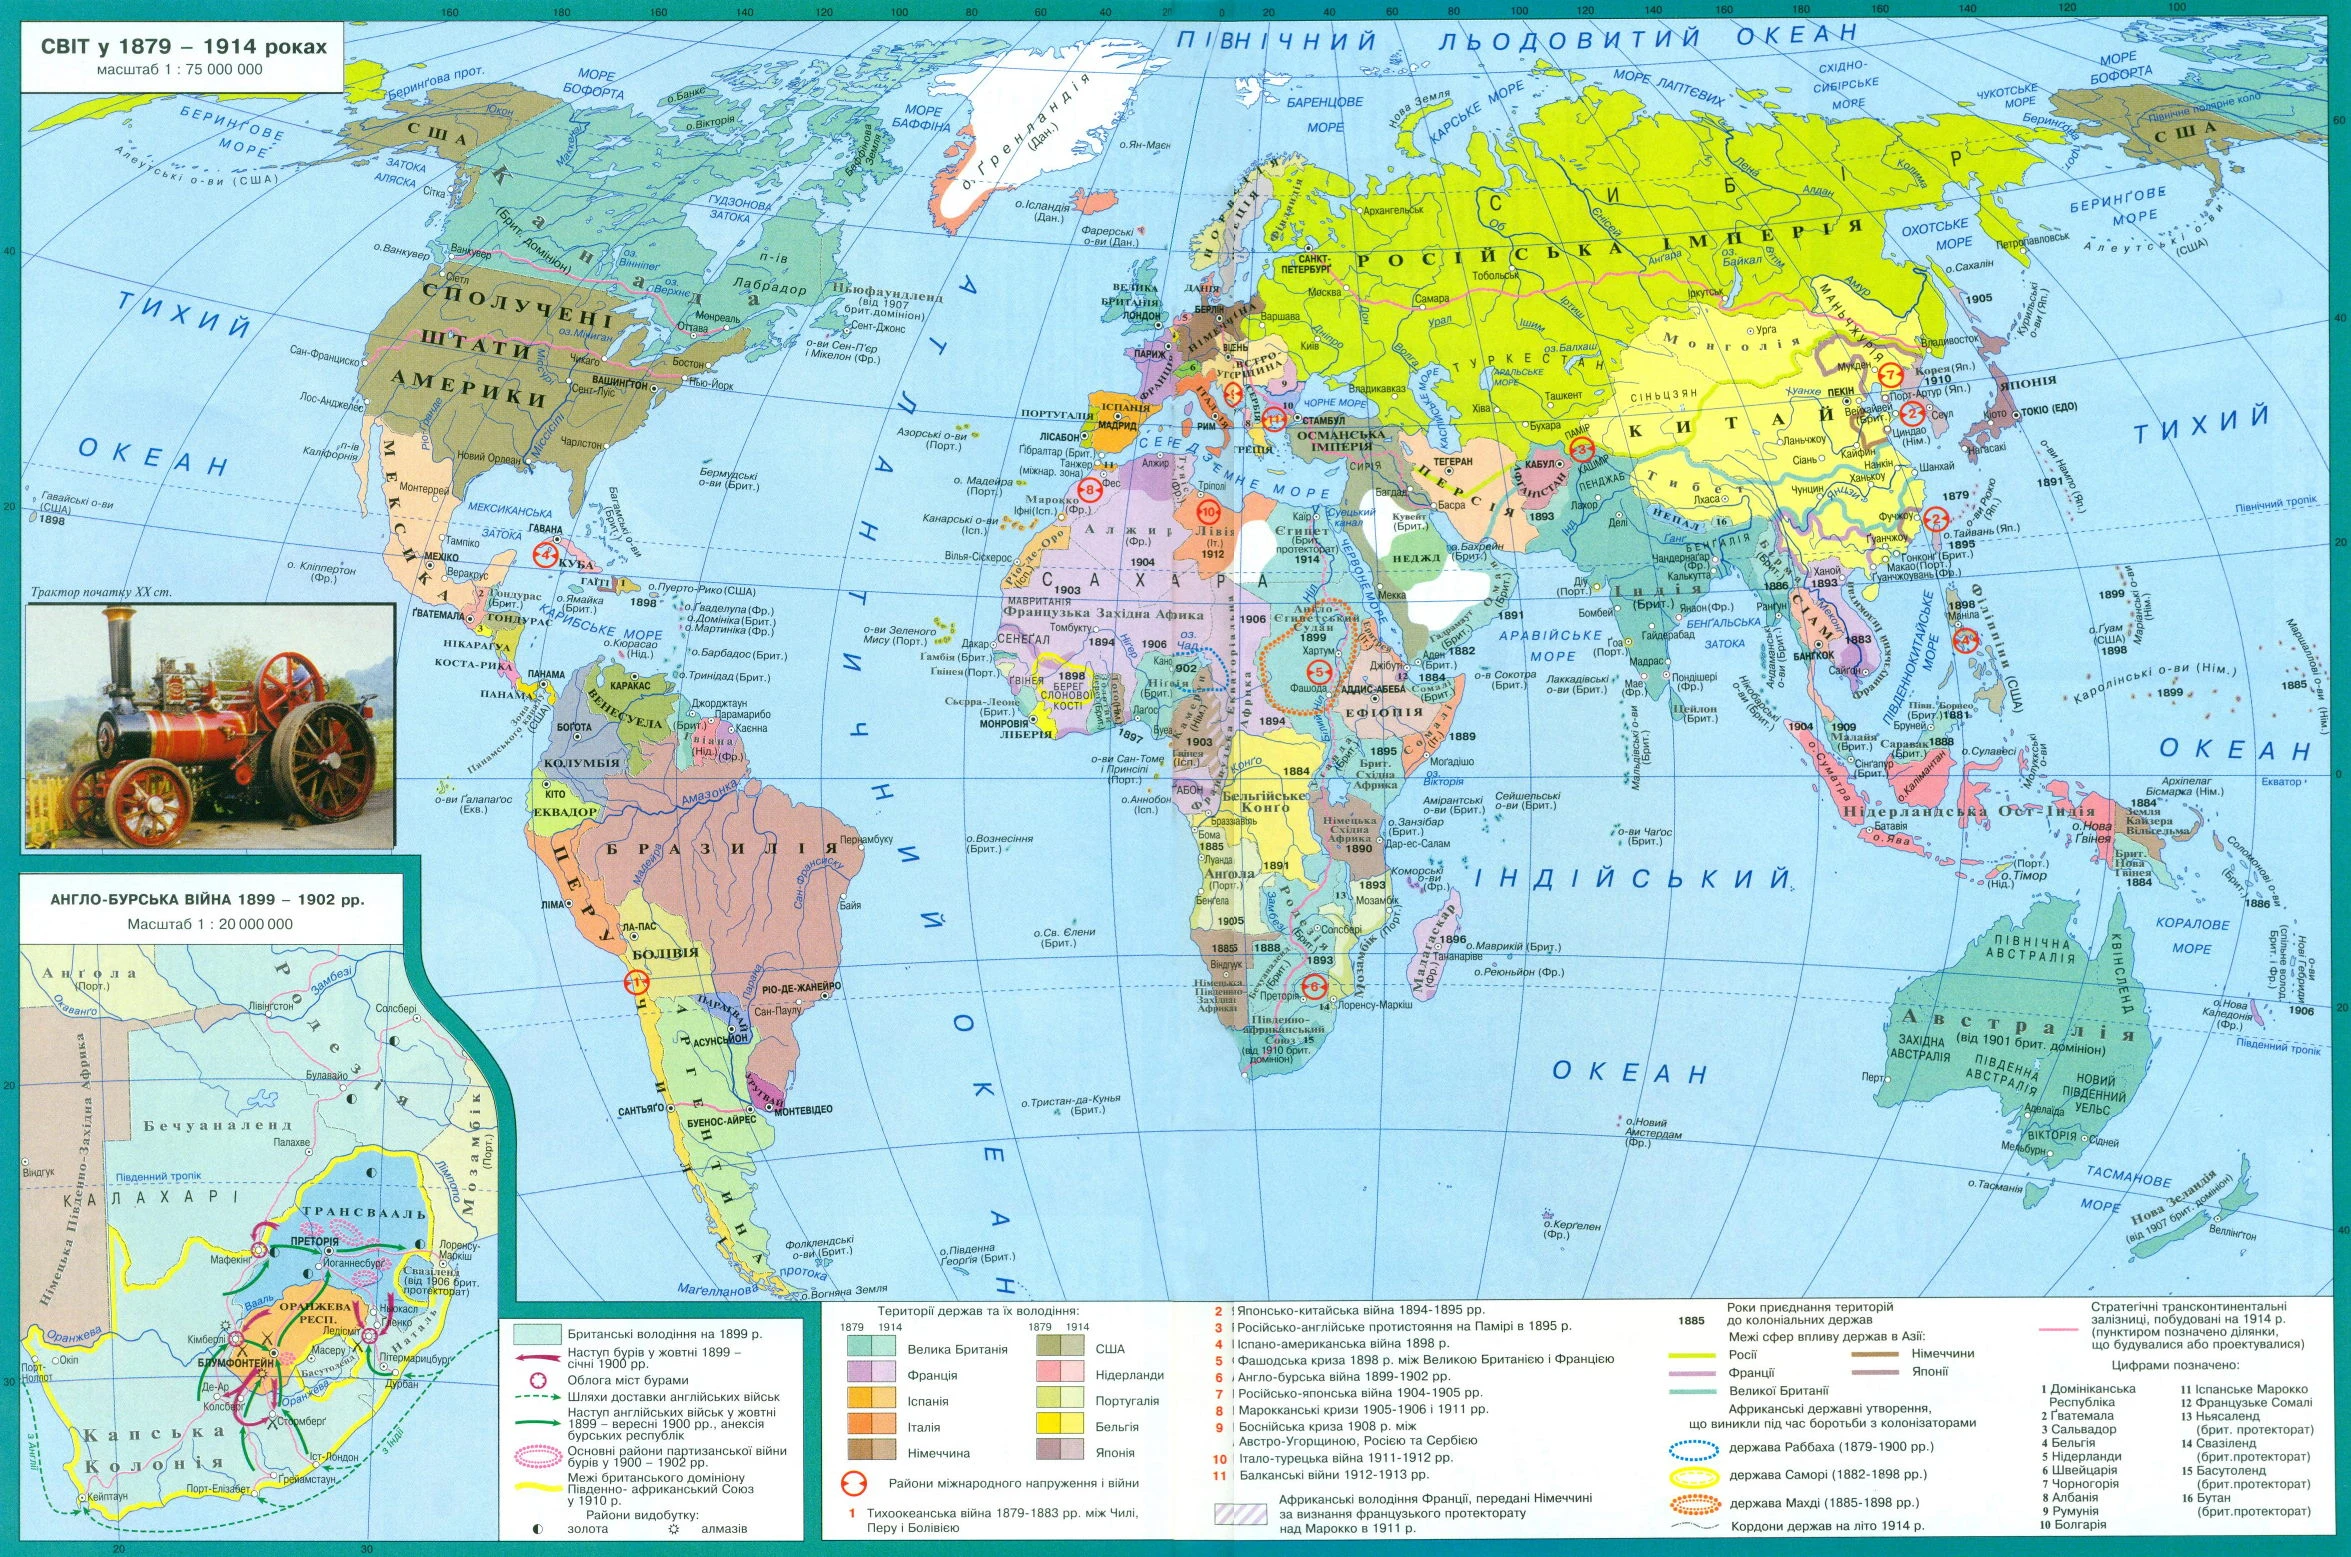 Карта: світ у 1879 - 1914 роках